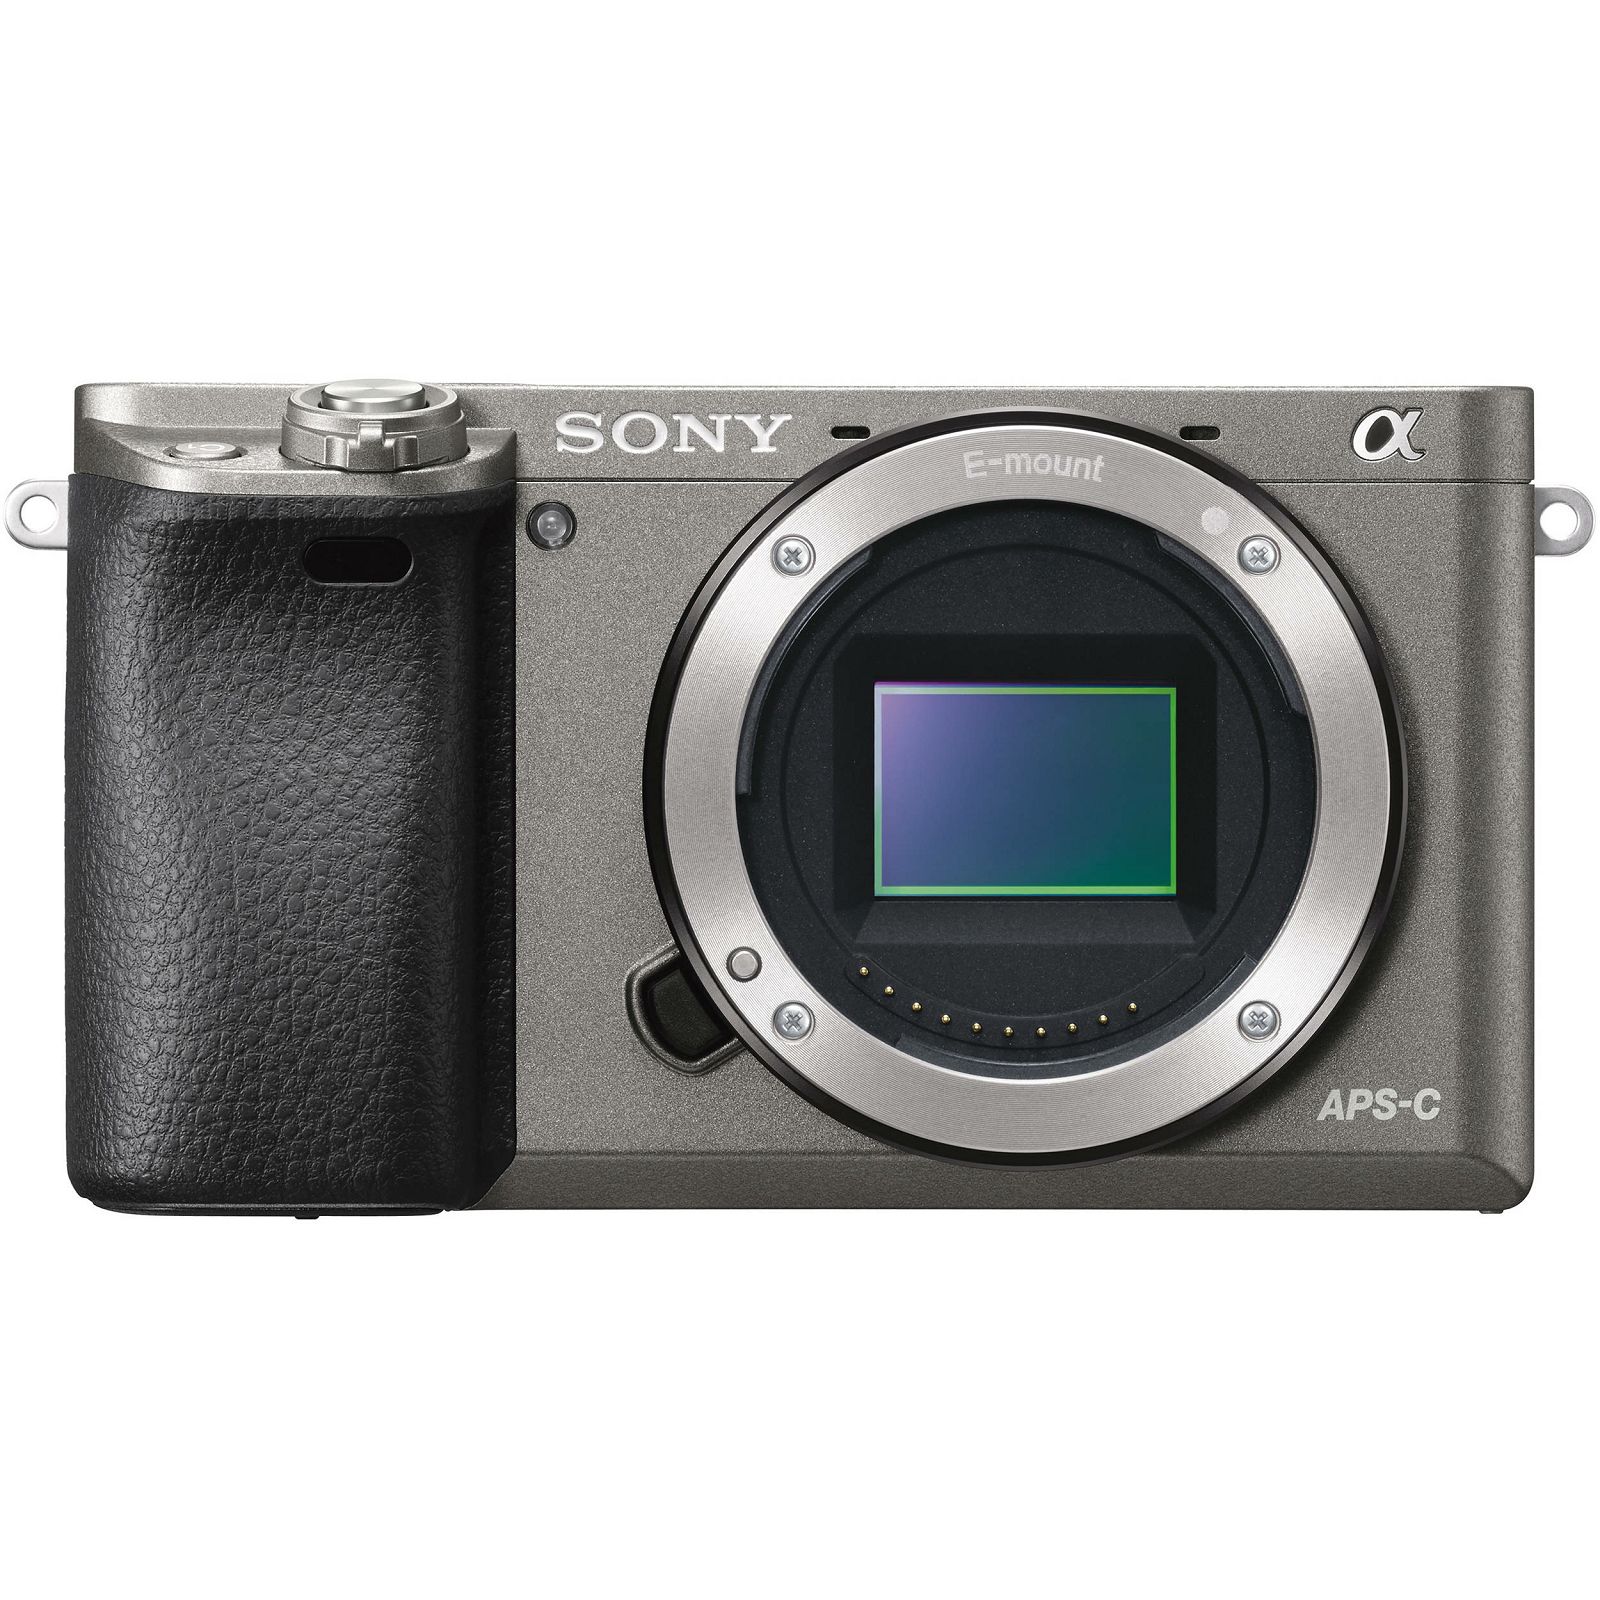 Sony Alpha a6000 + 16-50 f/3.5-5.6 KIT Grey Mirrorless Digital Camera crni bezrcalni digitalni fotoaparat i standardni zoom objektiv SEL1650 16-50mm f3.5-5.6 ILCE-6000LH ILCE6000LH (ILCE6000LH.CEC)